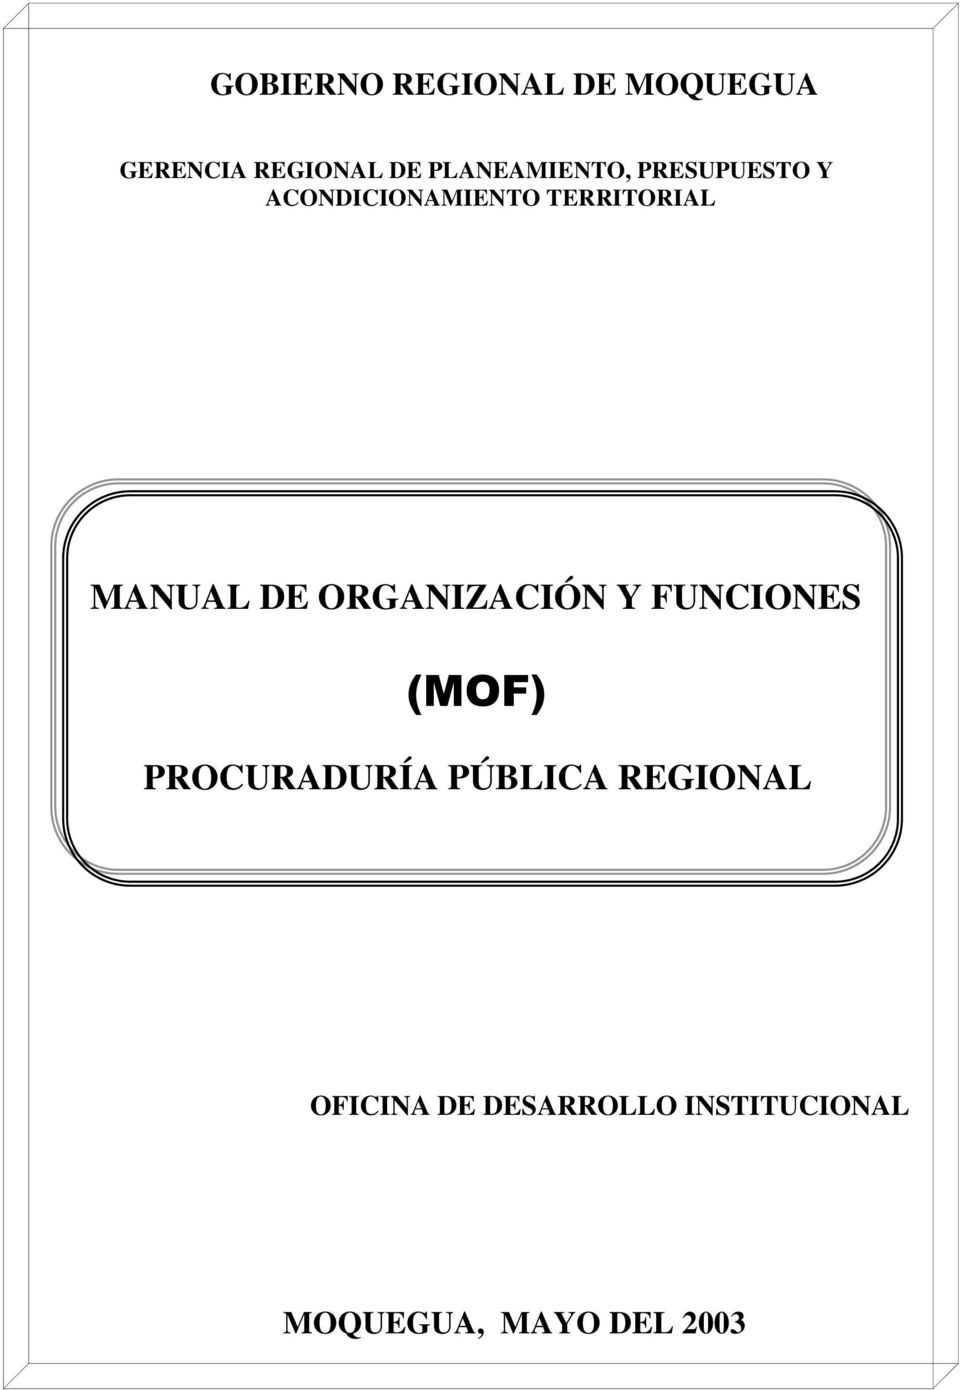 MANUAL DE ORGANIZACIÓN Y FUNCIONES (MOF) PROCURADURÍA